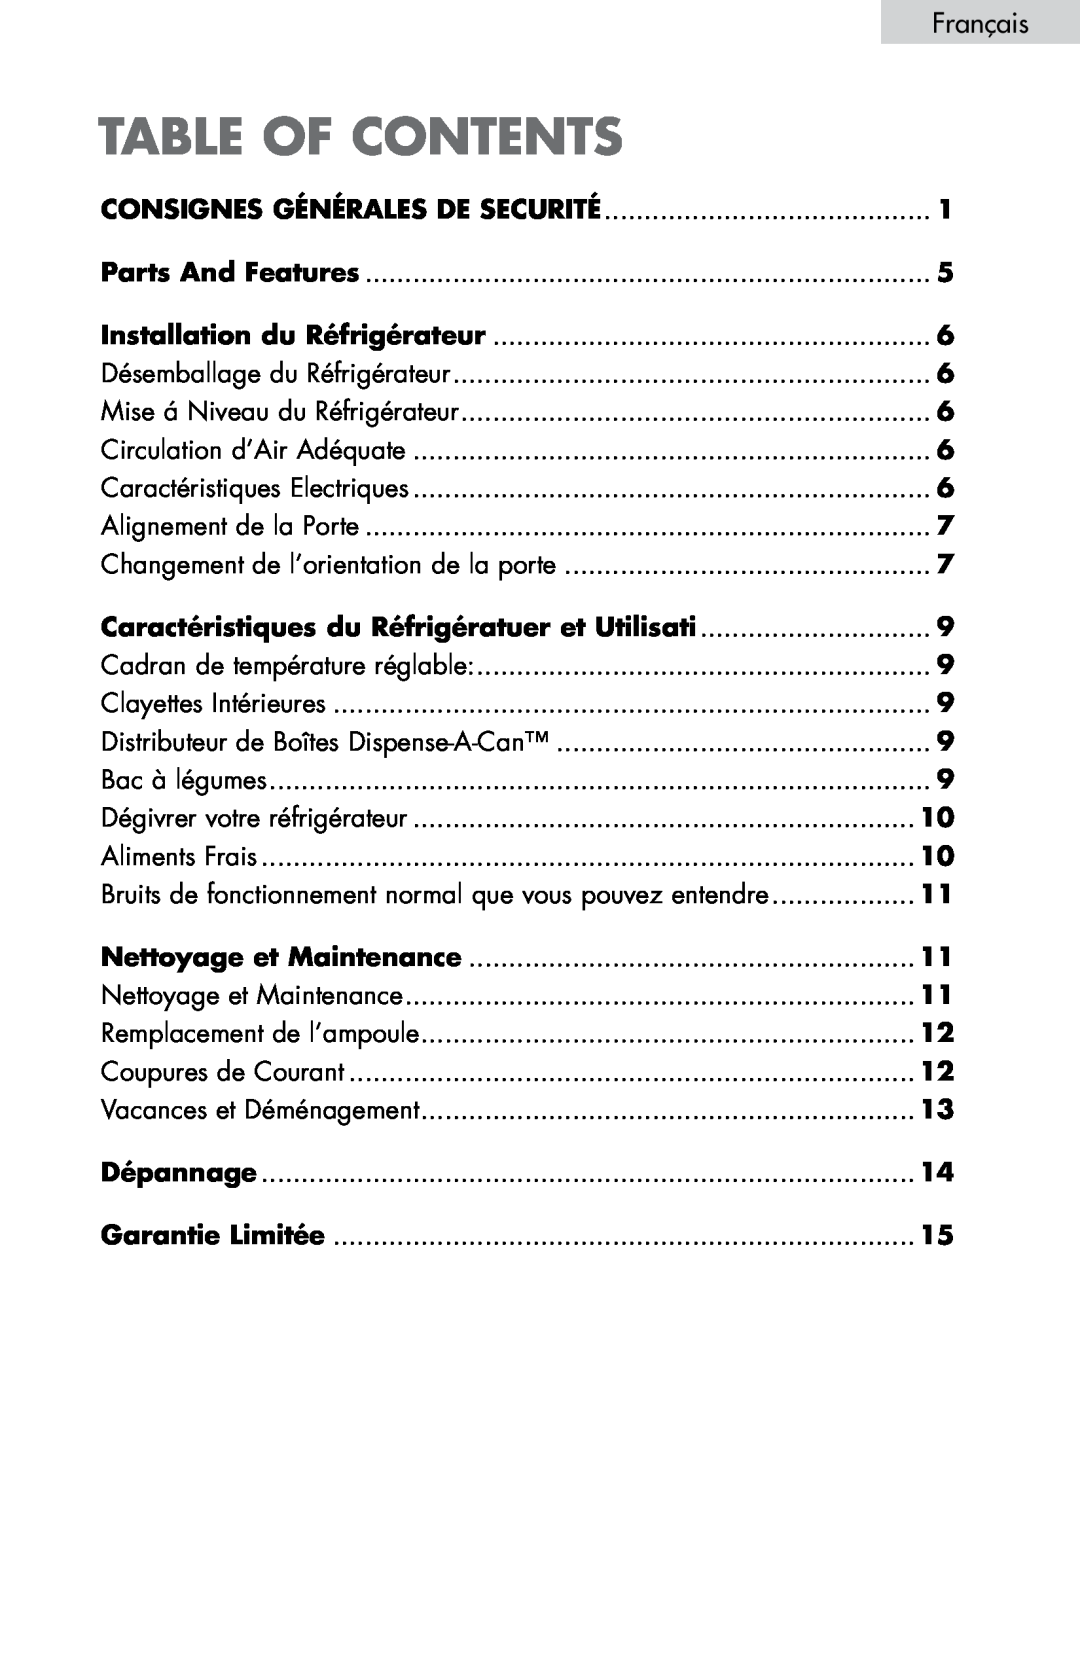 Haier HNDE03VS manual Français, Caractéristiques du Réfrigératuer et Utilisati, Nettoyage et Maintenance, table of contents 